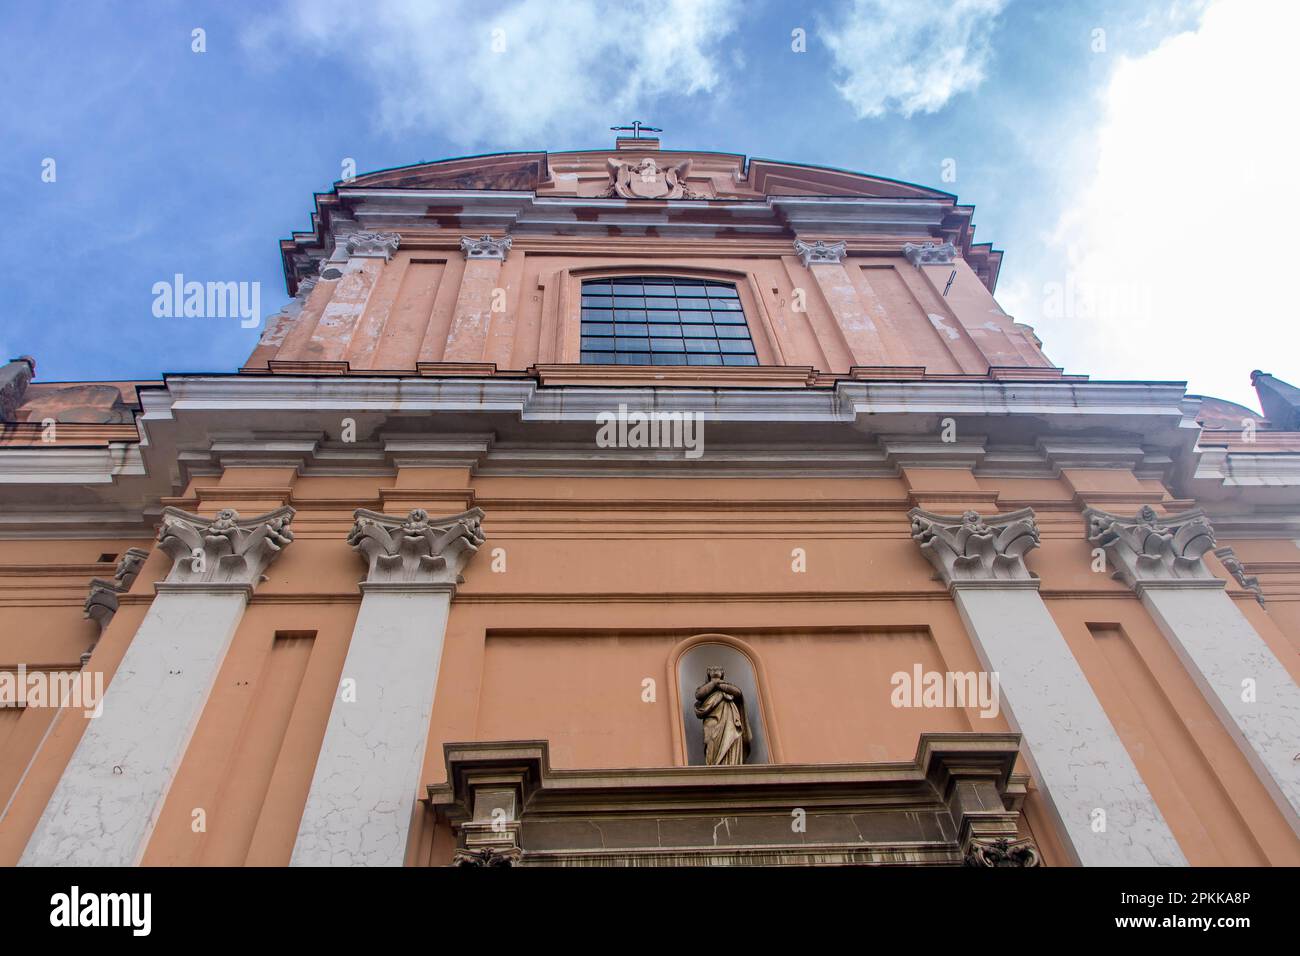 Facade of Santa Teresa degli Scalzi church in the historic center of Naples, Italy Stock Photo